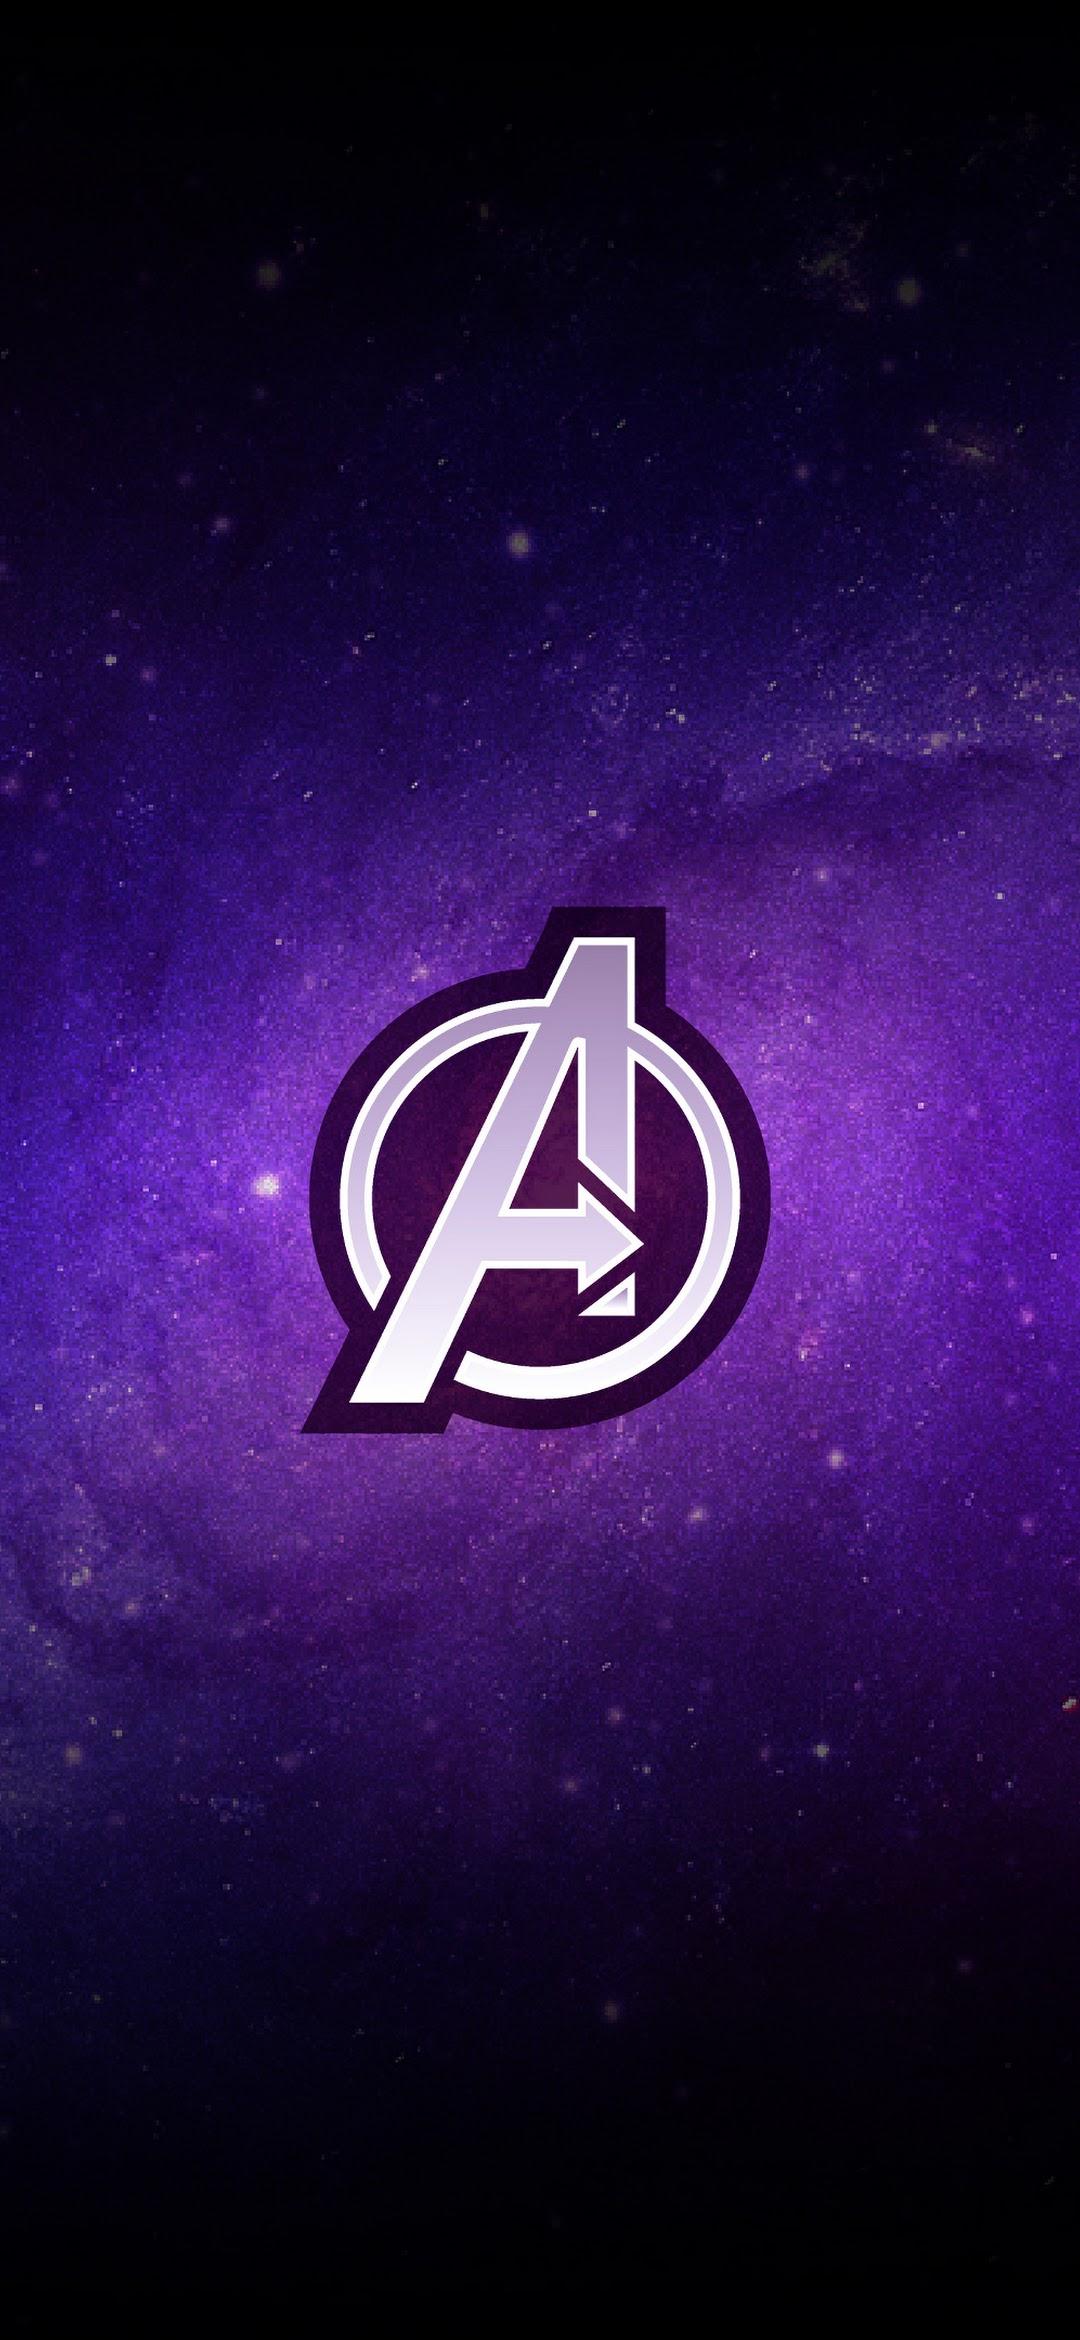 Avengers: Endgame Logo 4K Wallpaper